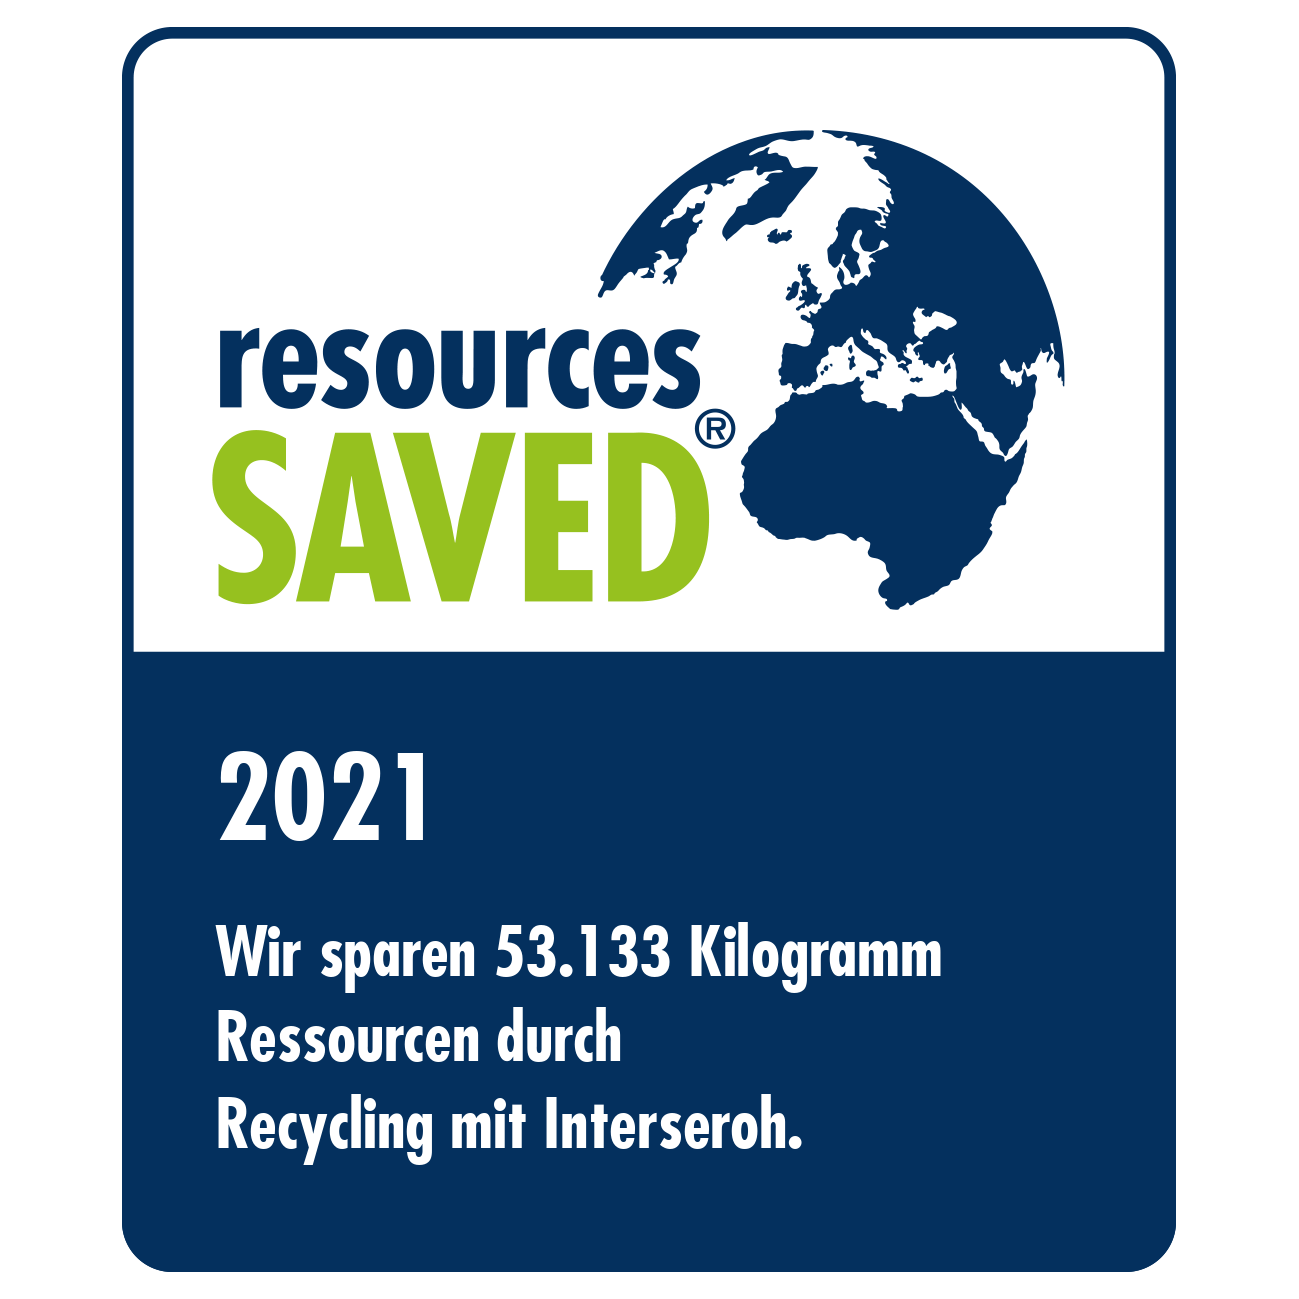 2021 - Eingesparte Ressourcen durch Recycling